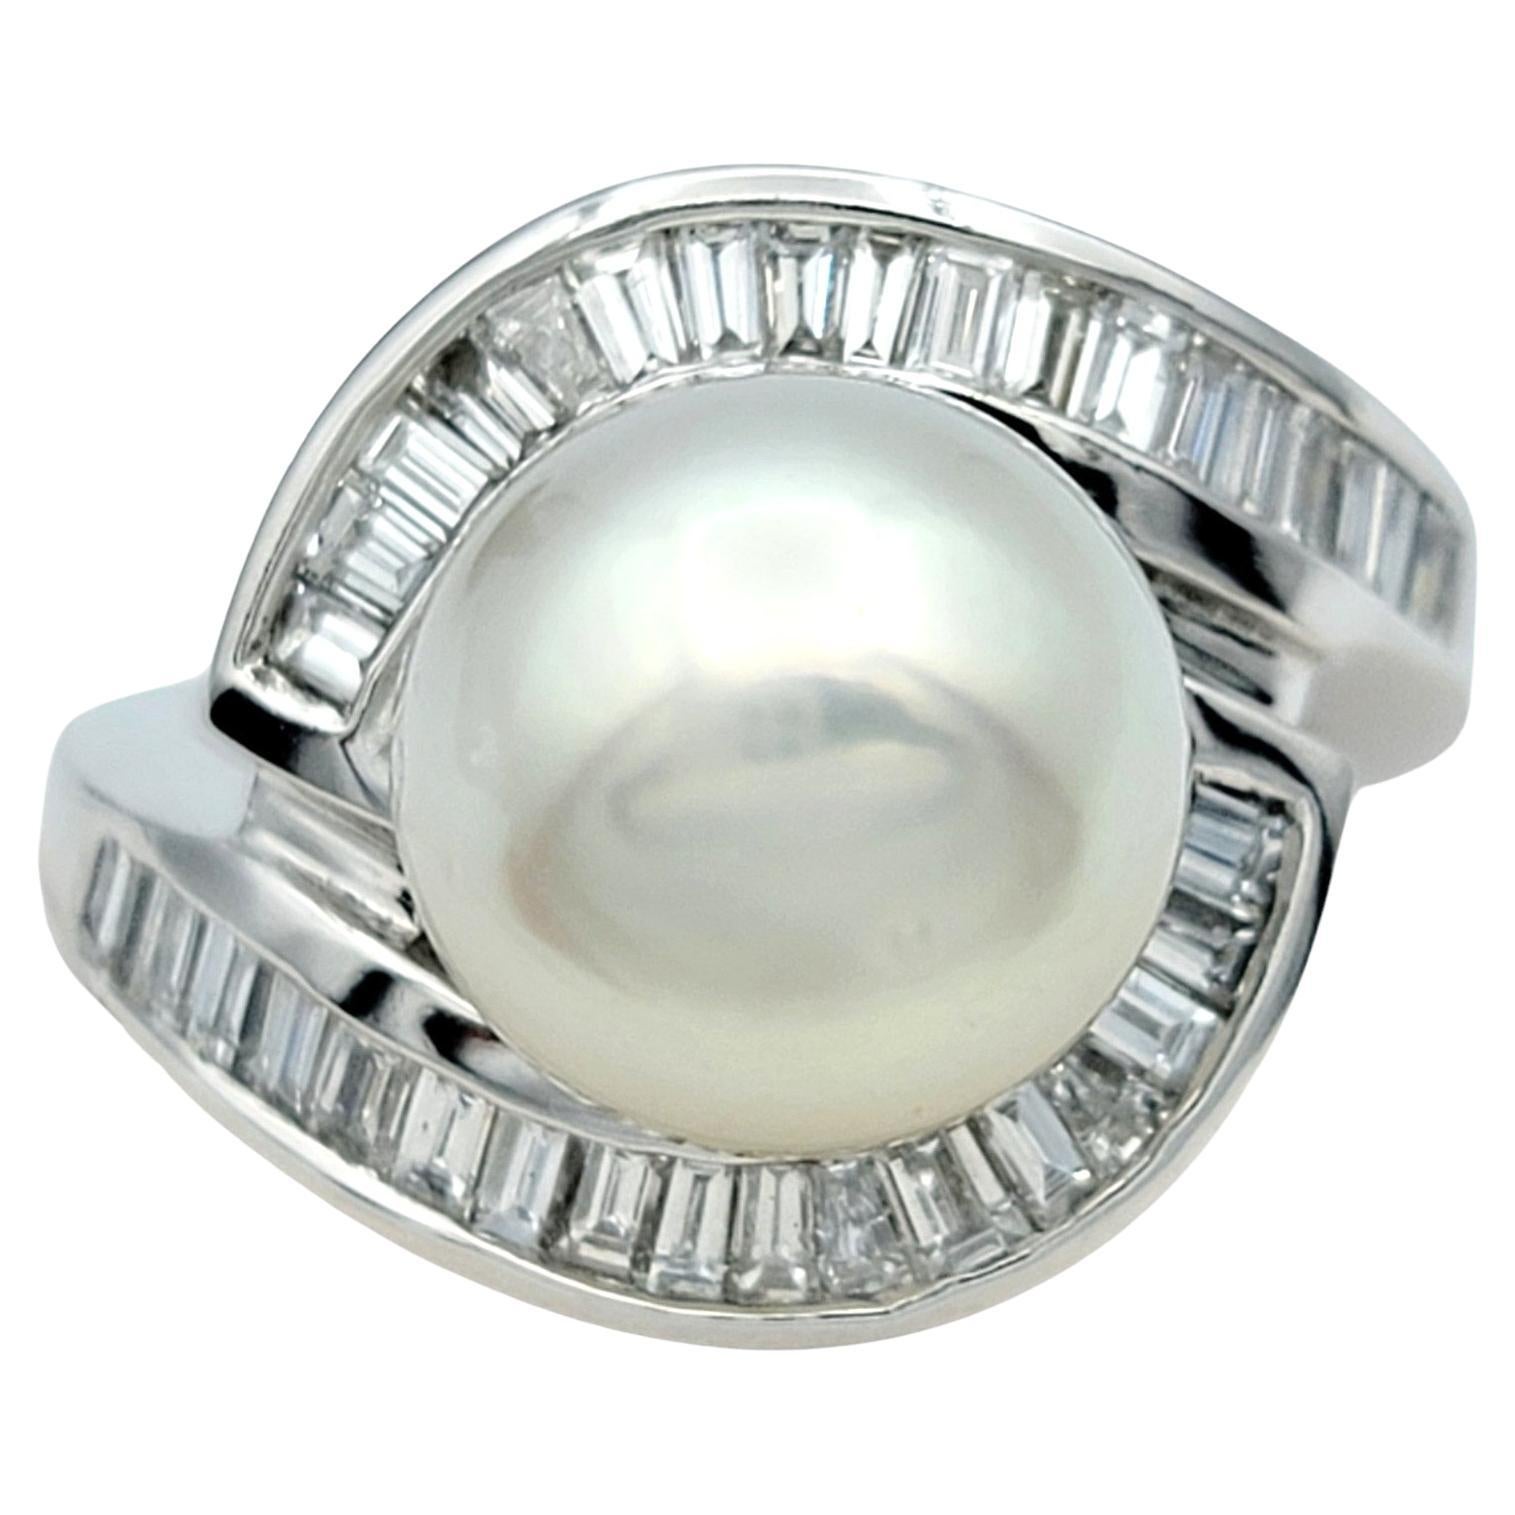 Taille de lla bague : 6

Cette étonnante bague en perles et diamants sertie en or blanc 18 carats est un bijou captivant et élégant qui respire la sophistication et la grâce. En son centre repose une perle Akoya d'un blanc éclatant, réputée pour sa